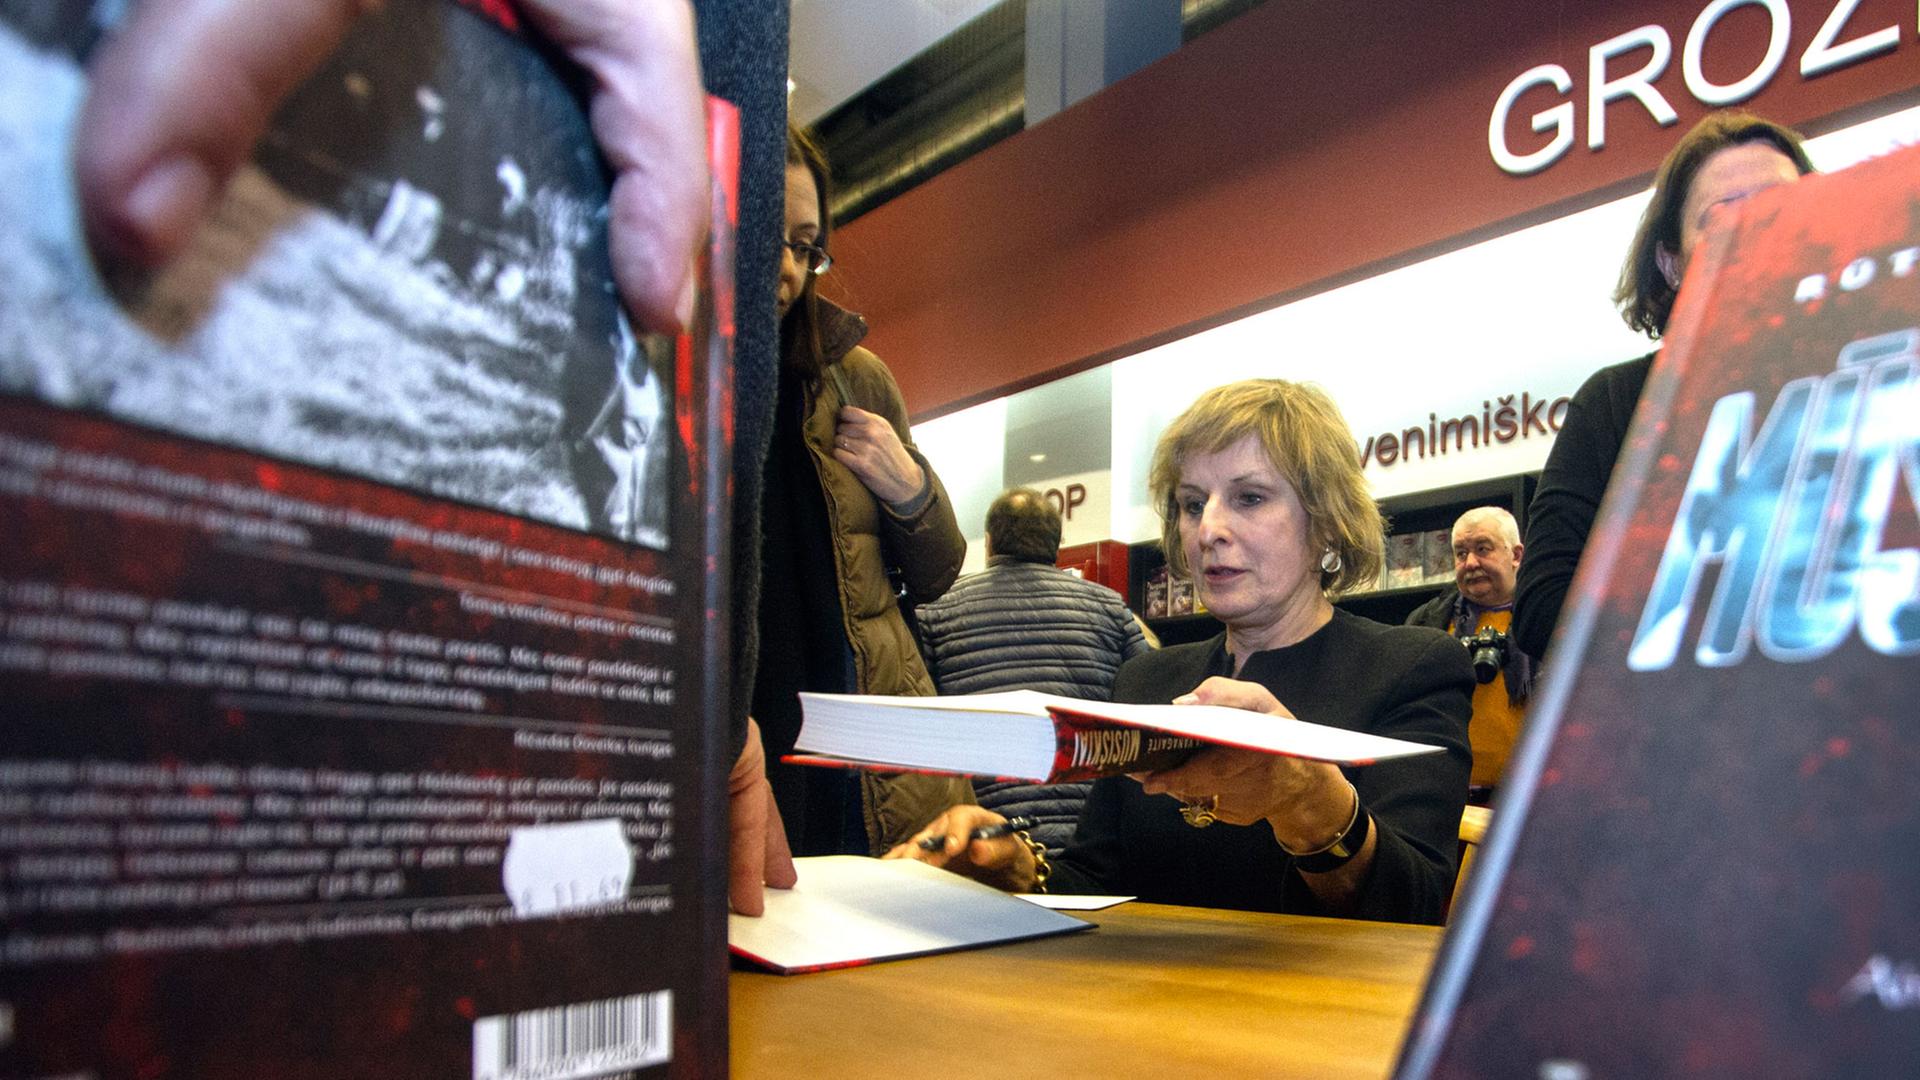 Die litauische Autorin Ruta Vanagaitè beim Signieren des des Buches "Die Unsrigen"